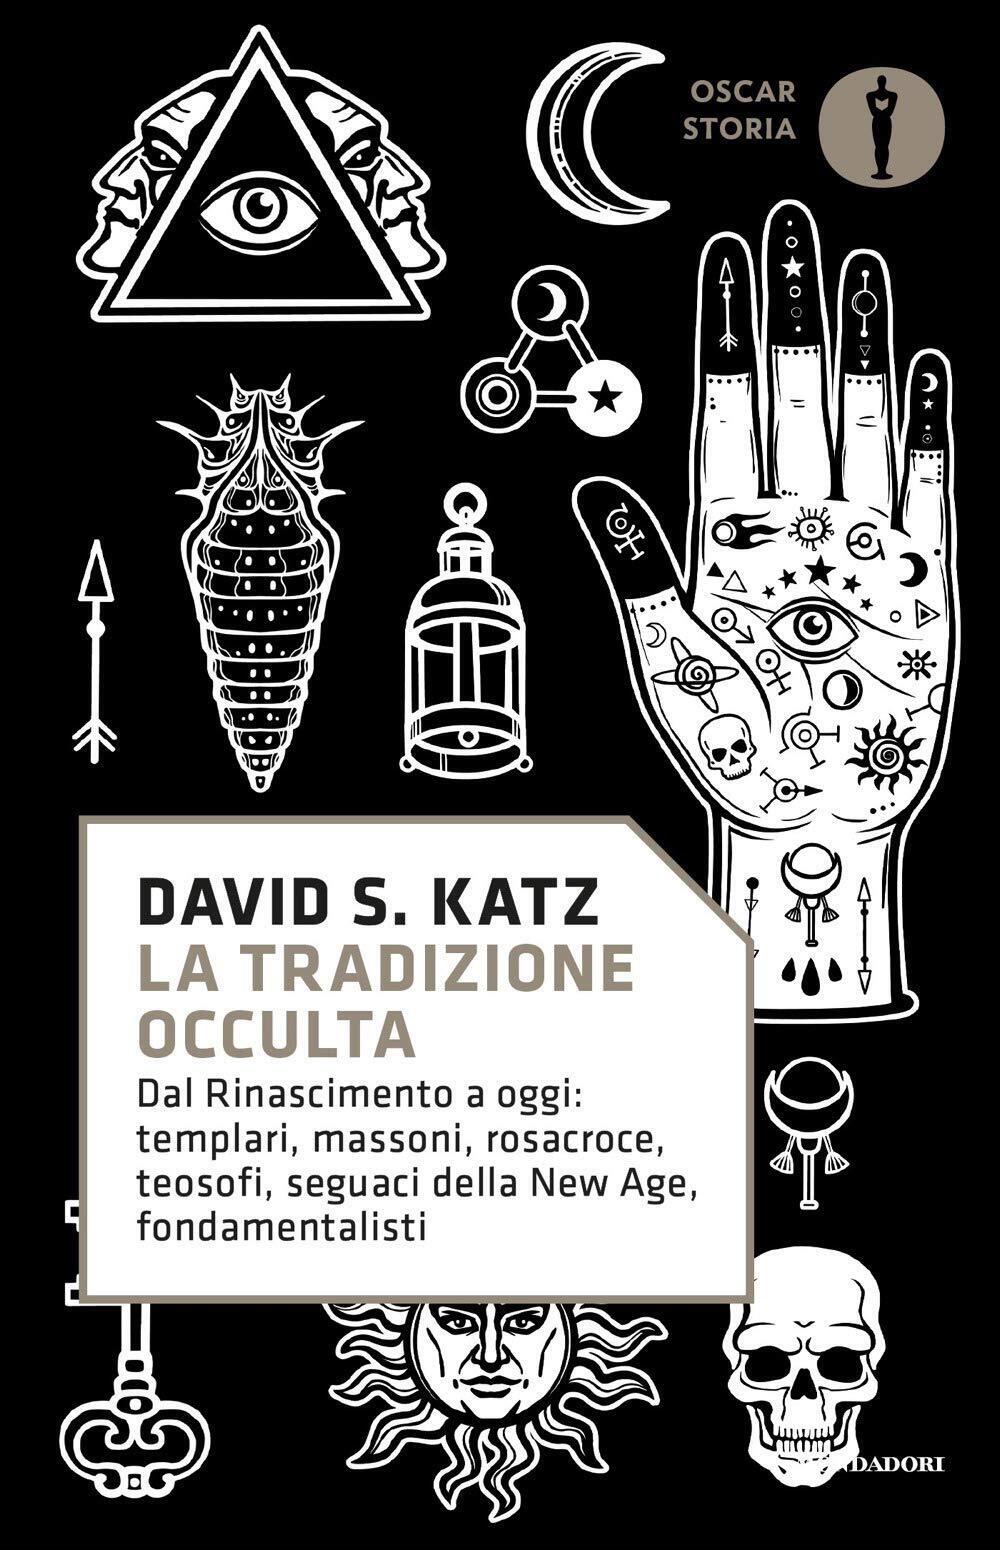 La tradizione occulta - David S. Katz - Mondadori, 2020